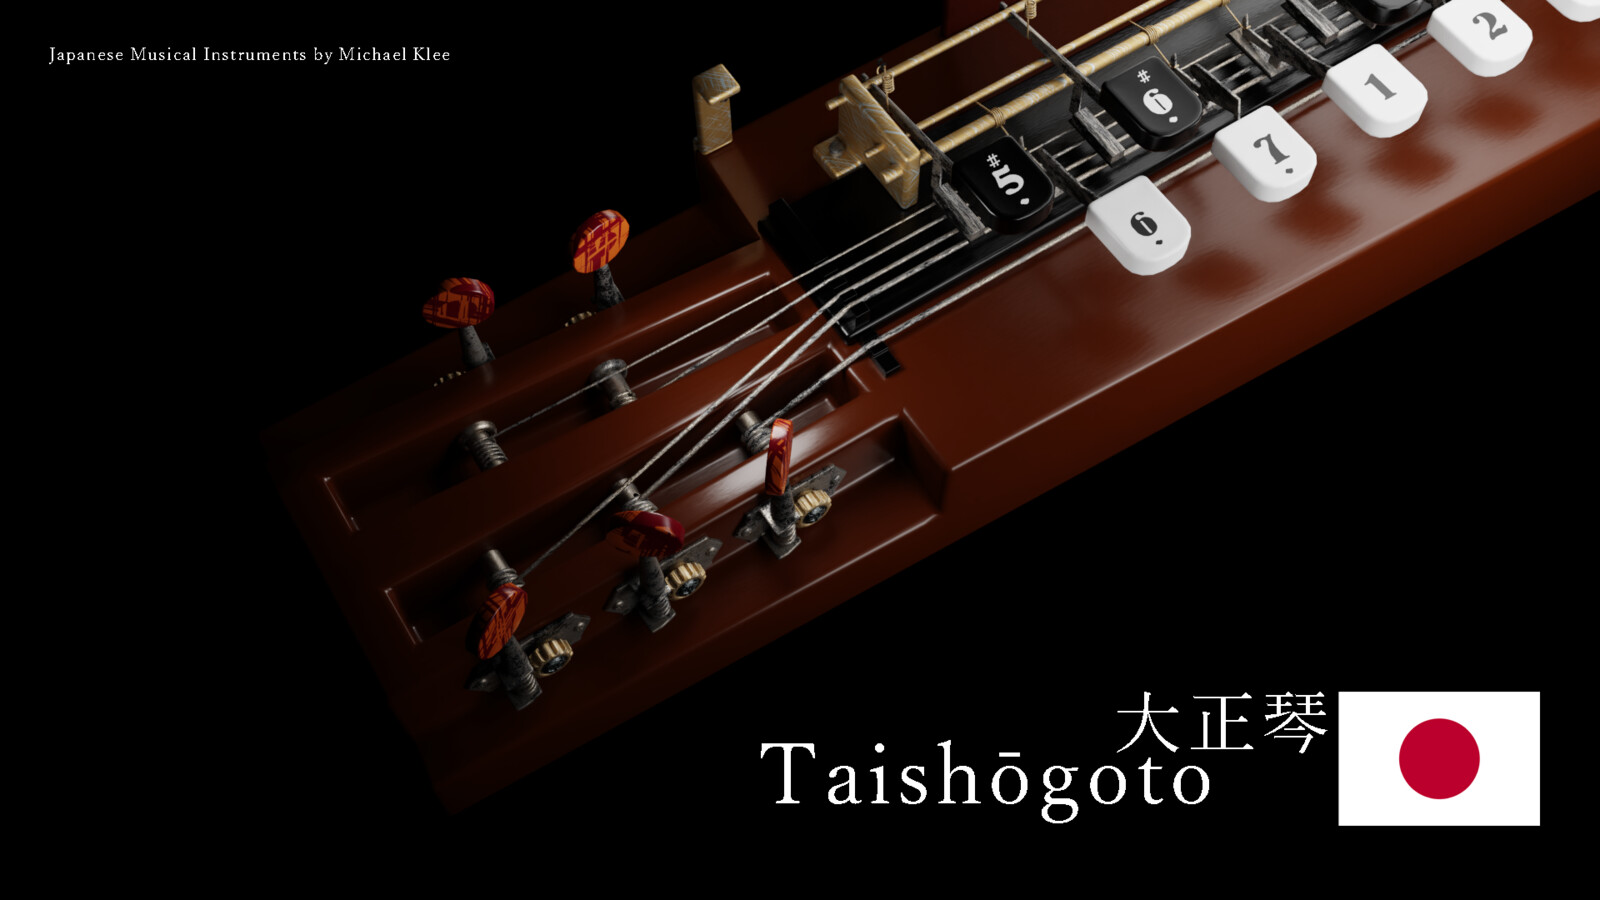 The taishōgoto 大正琴 strings